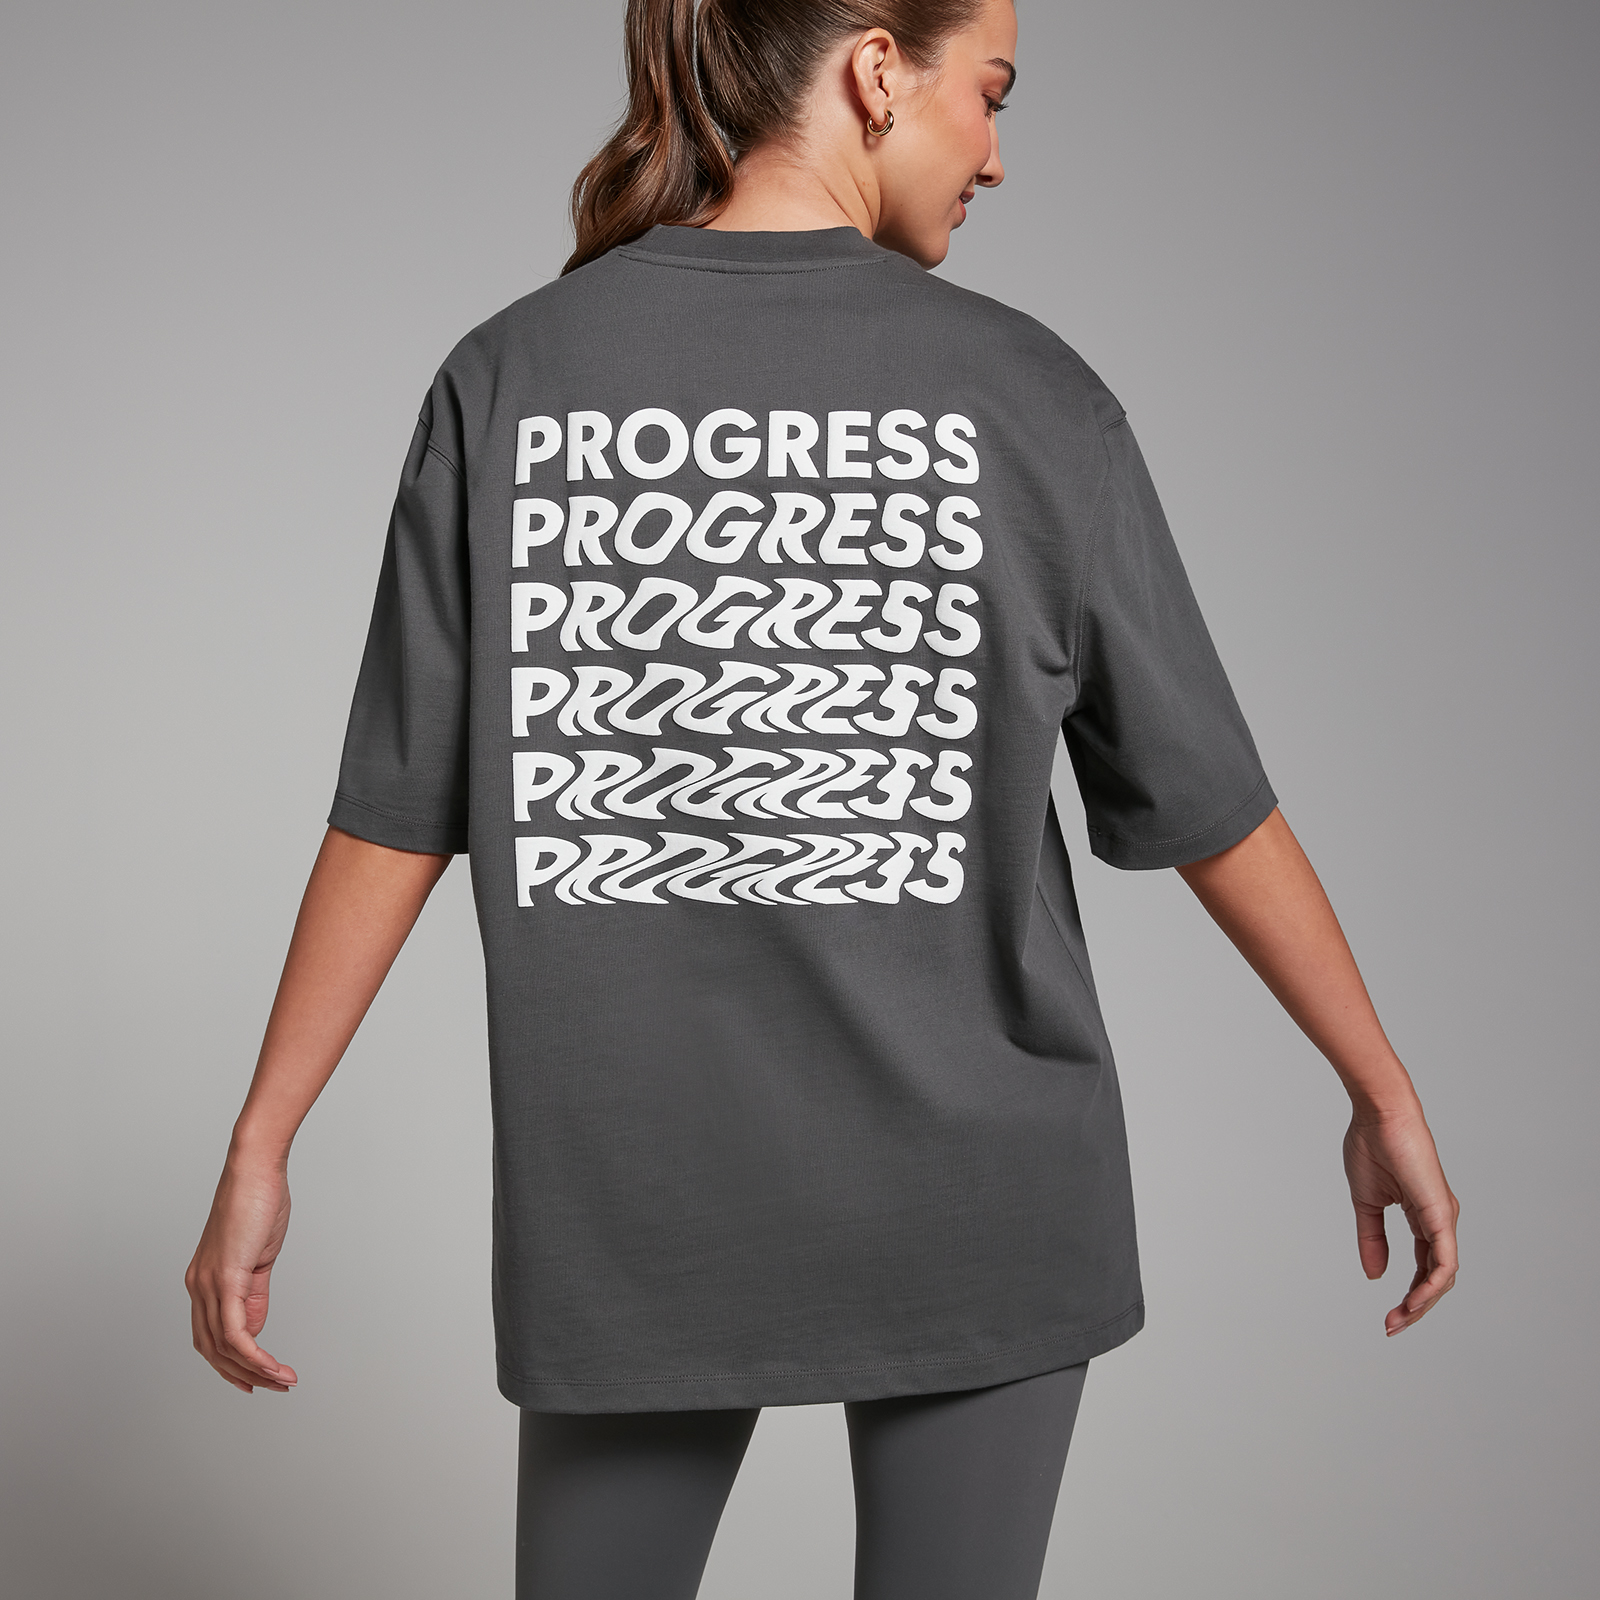 Tempo 節奏系列 女士 Progress T 恤 - 陰影